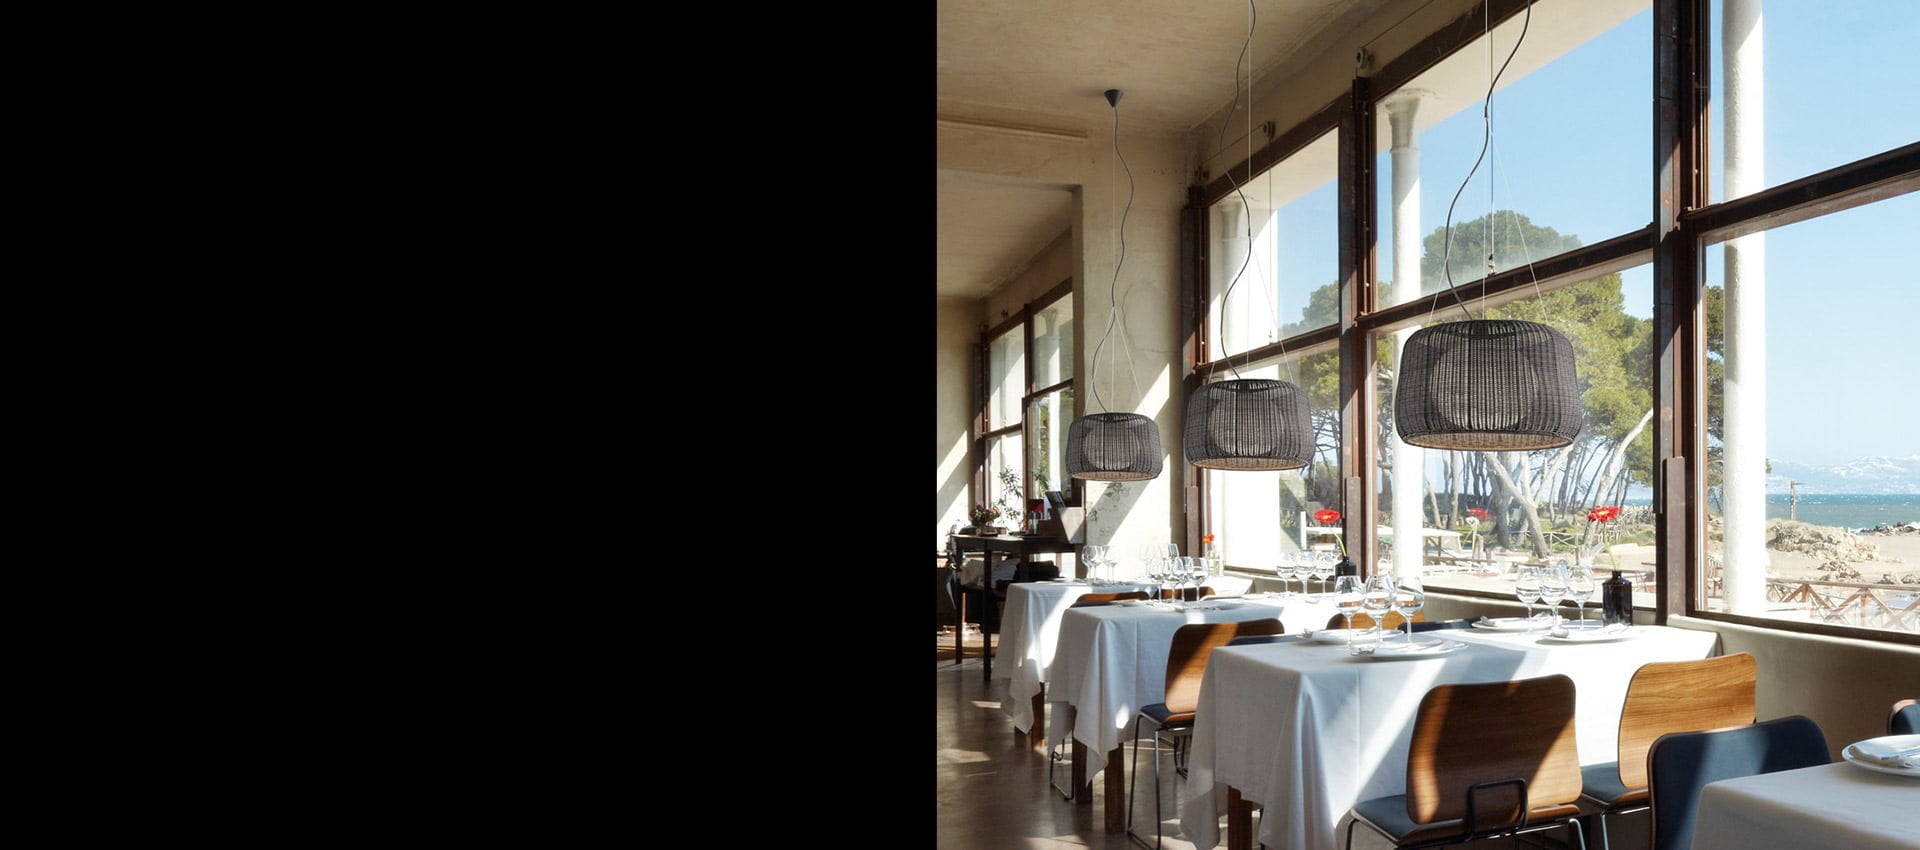 Lampi suspendate decorative restaurant terasa